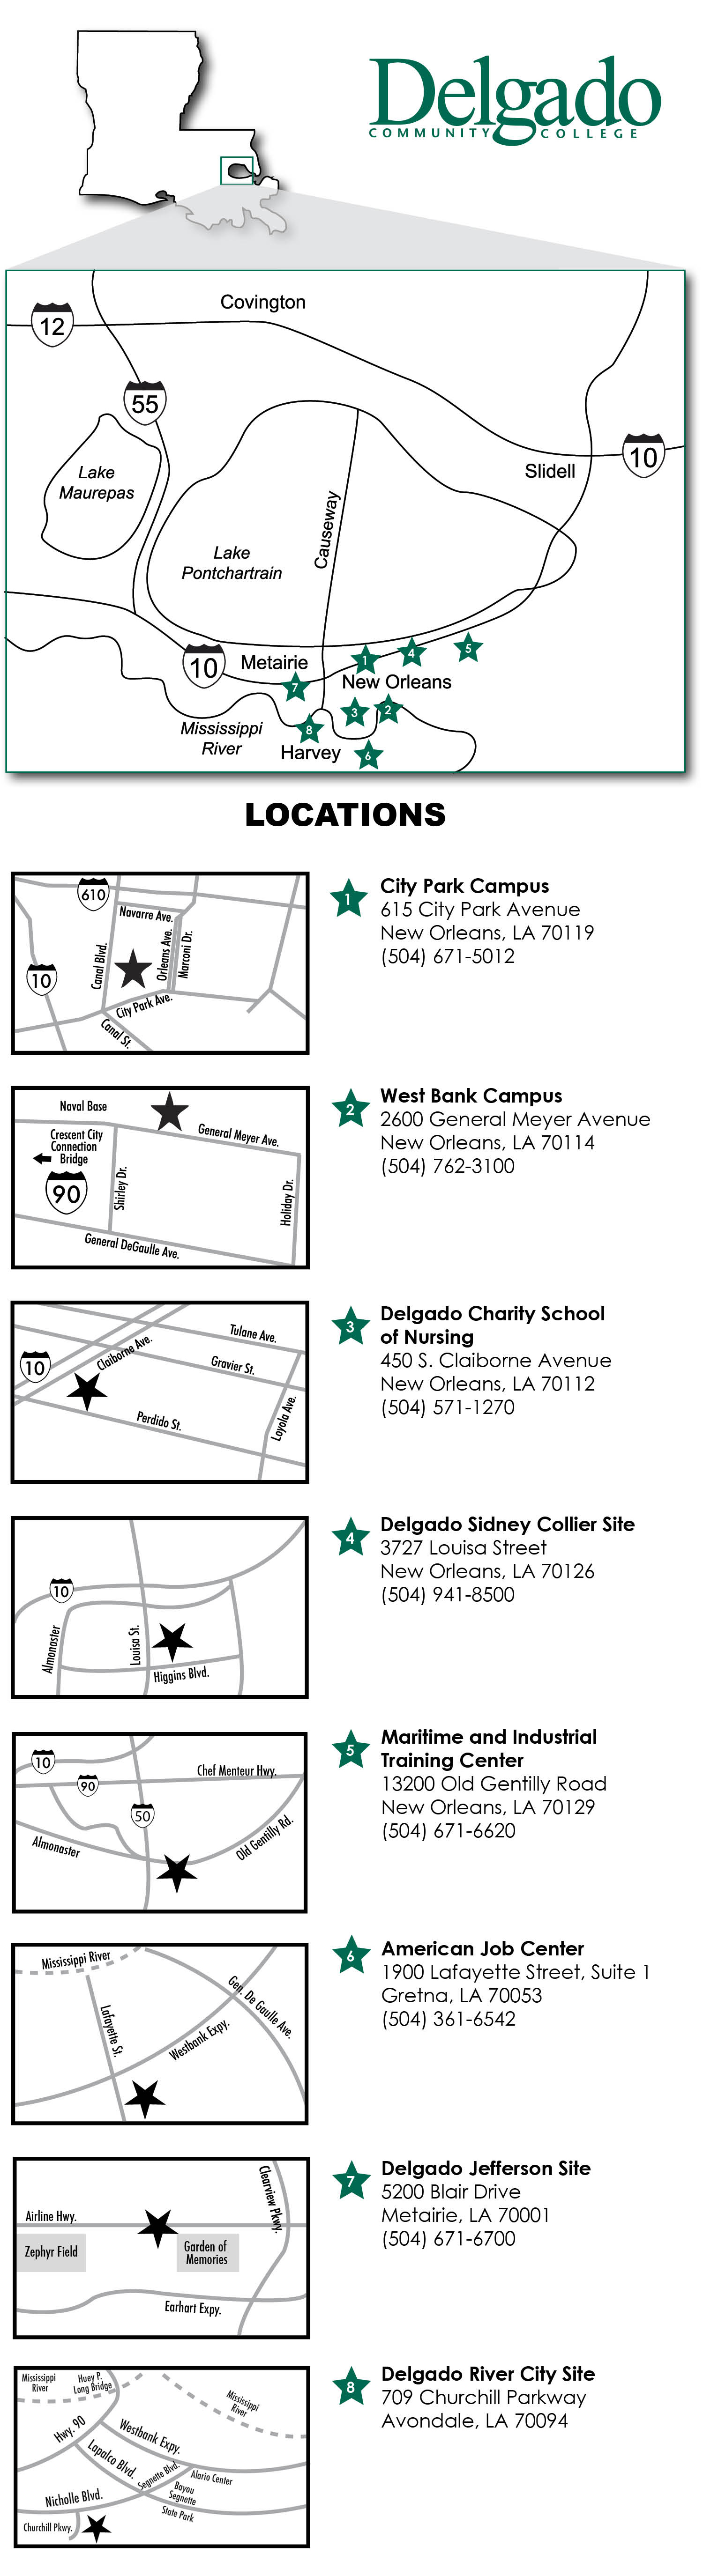 Maps of each Delgado location